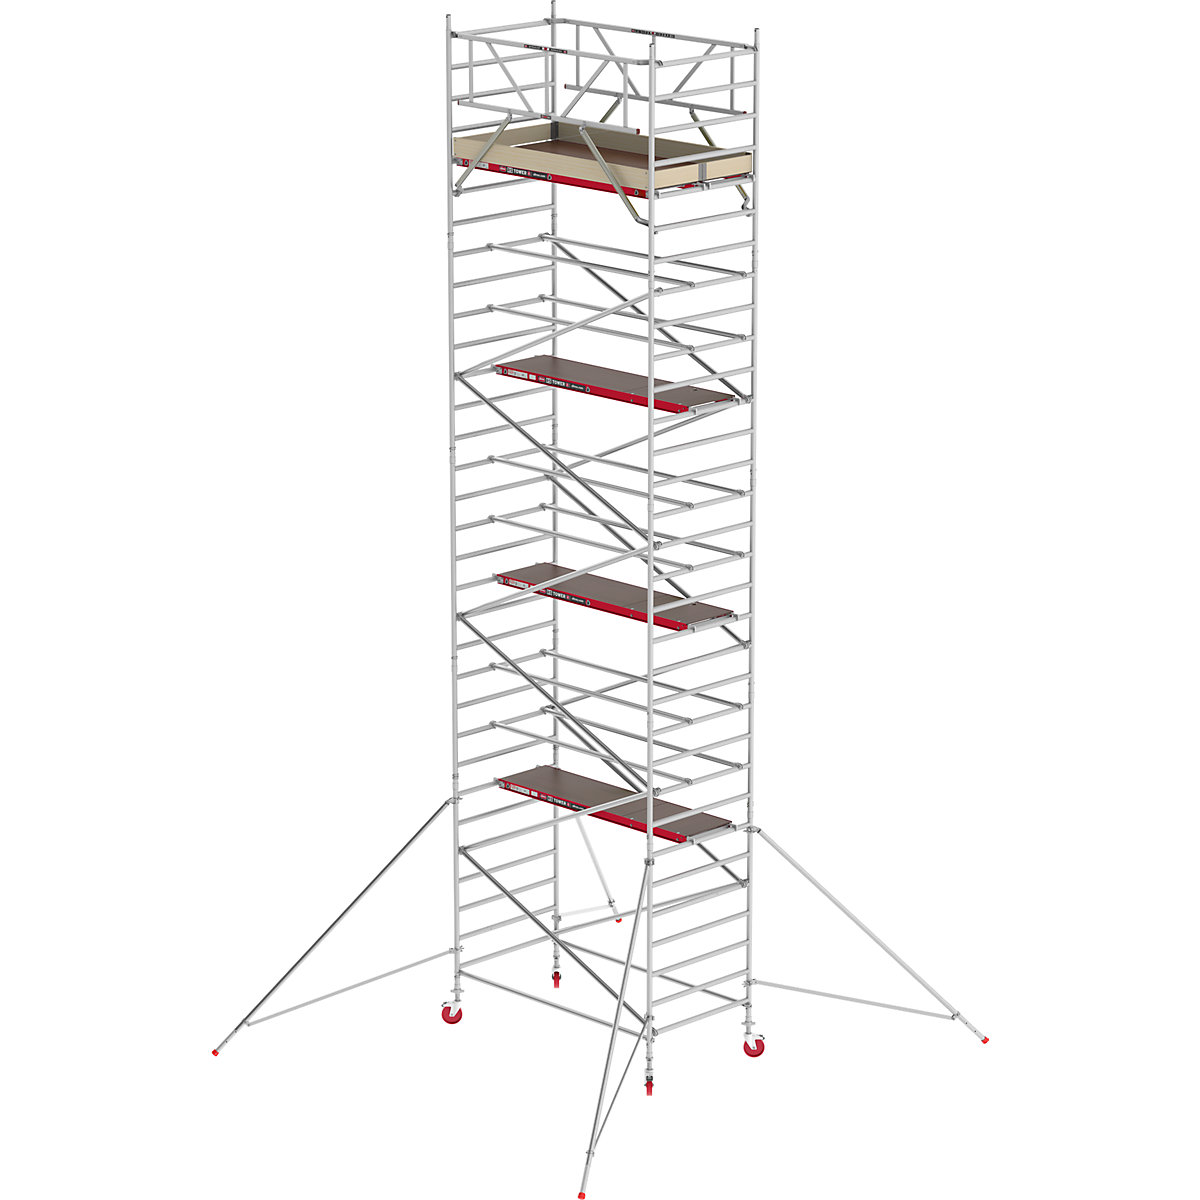 Schelă mobilă RS TOWER 42 lată – Altrex, platformă din lemn, lungime 2,45 m, înălțime de lucru 10,20 m-4